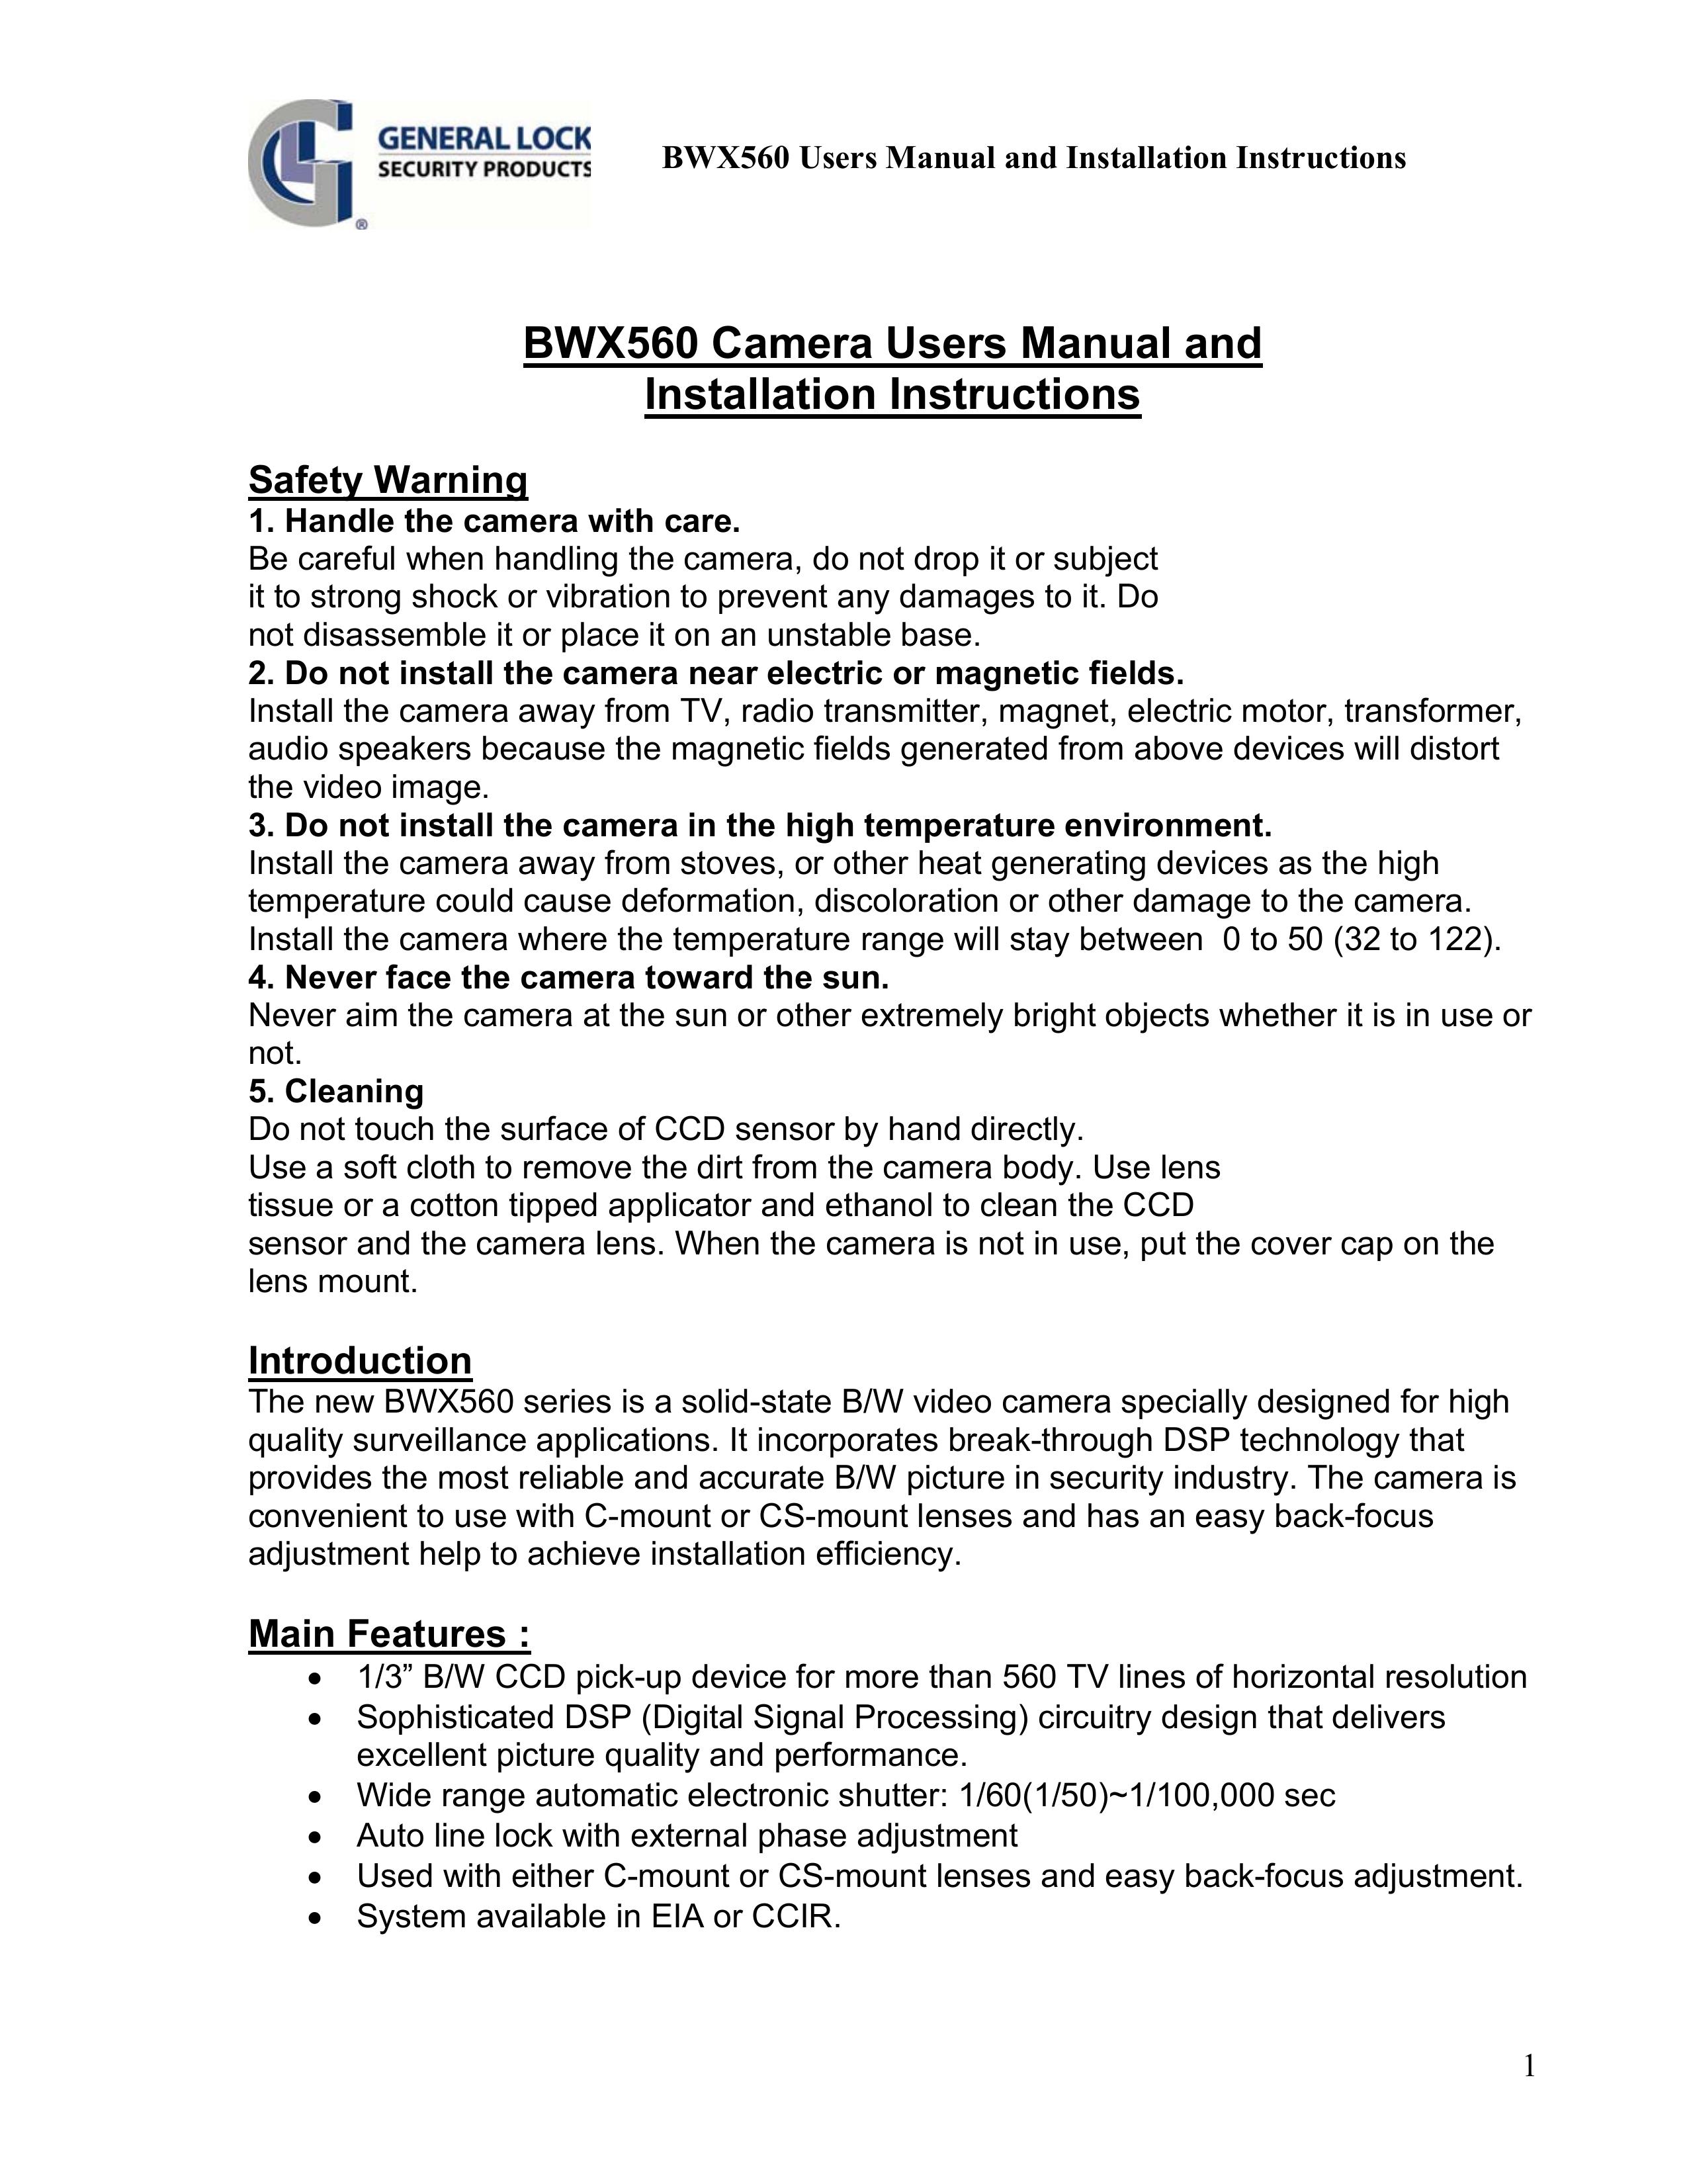 AT&T BWX560 Digital Camera User Manual